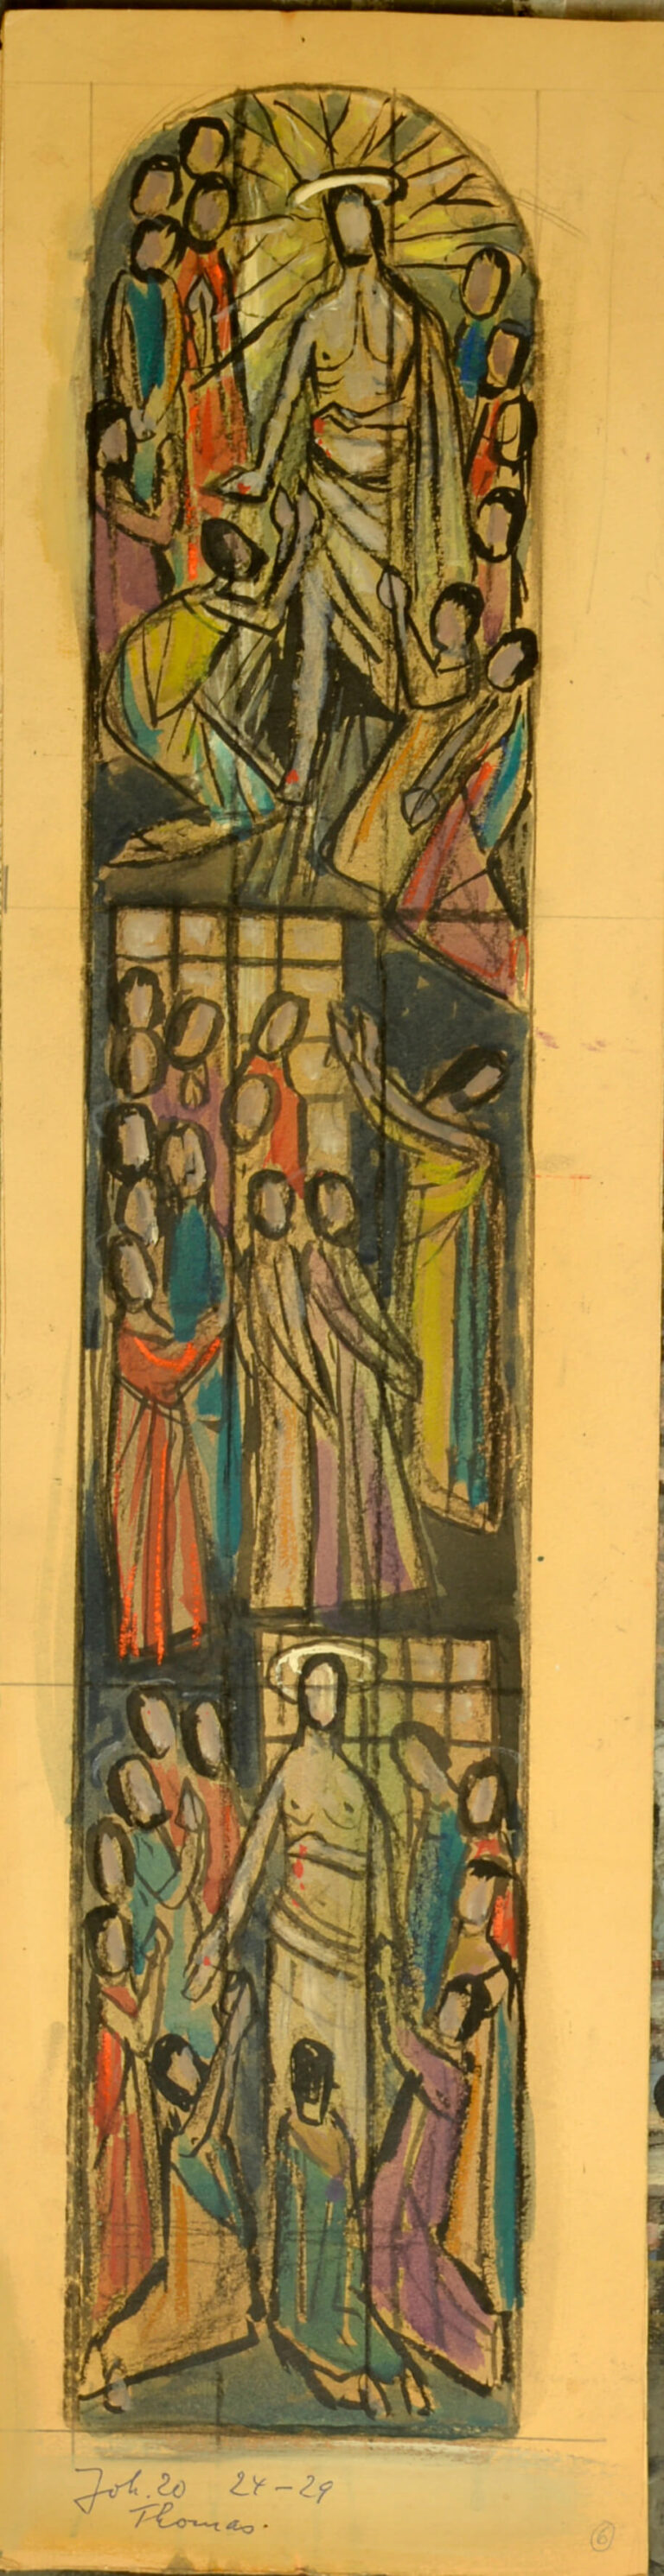 Fritz Heidingsfeld: Entwurf Chorfenster I, undat., kfh0204